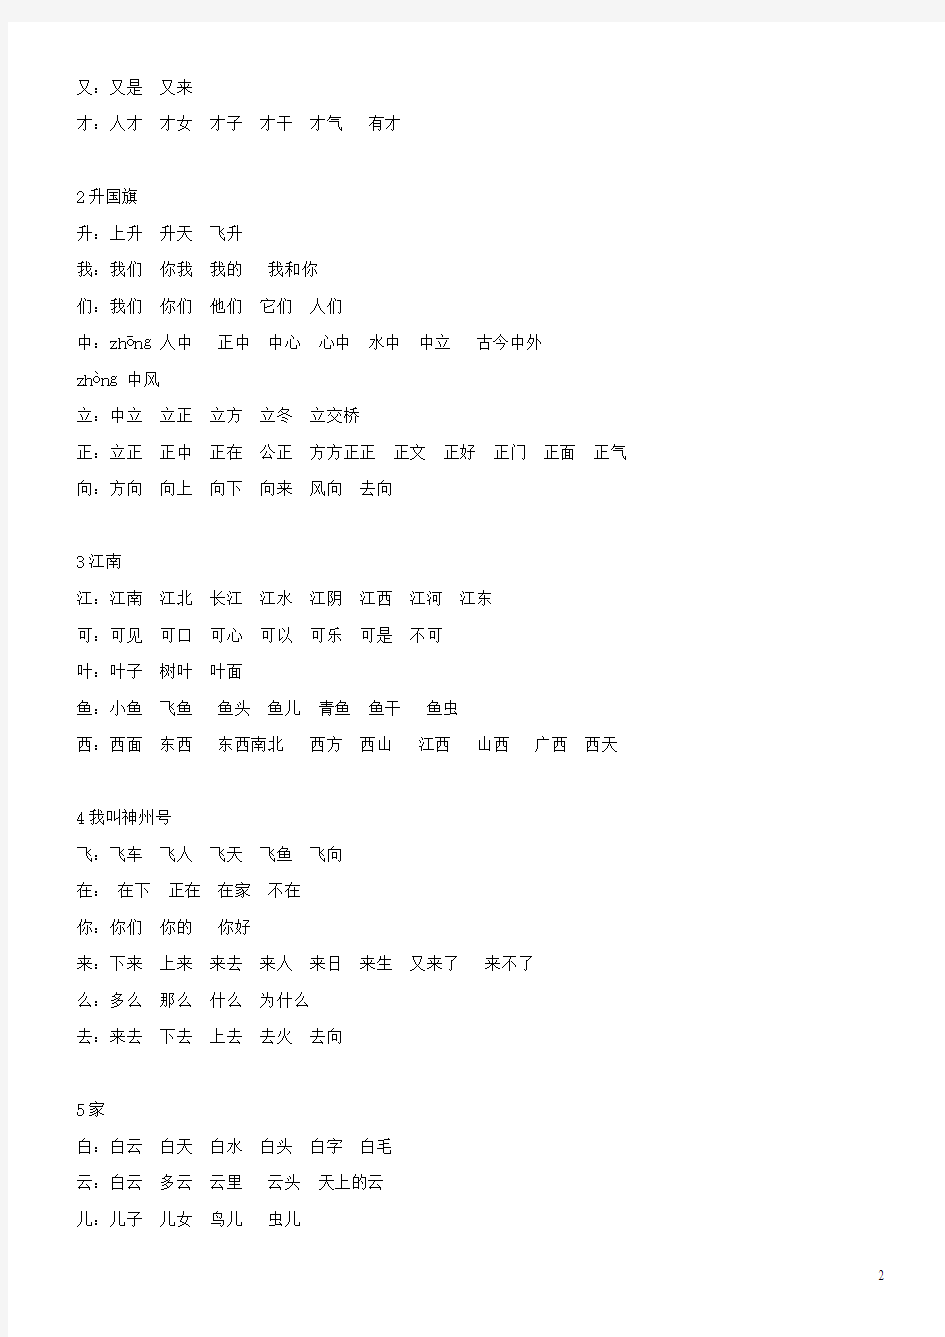 苏教版小学语文一年级上册生字组词表、同音字、多音字(全_直接打印)